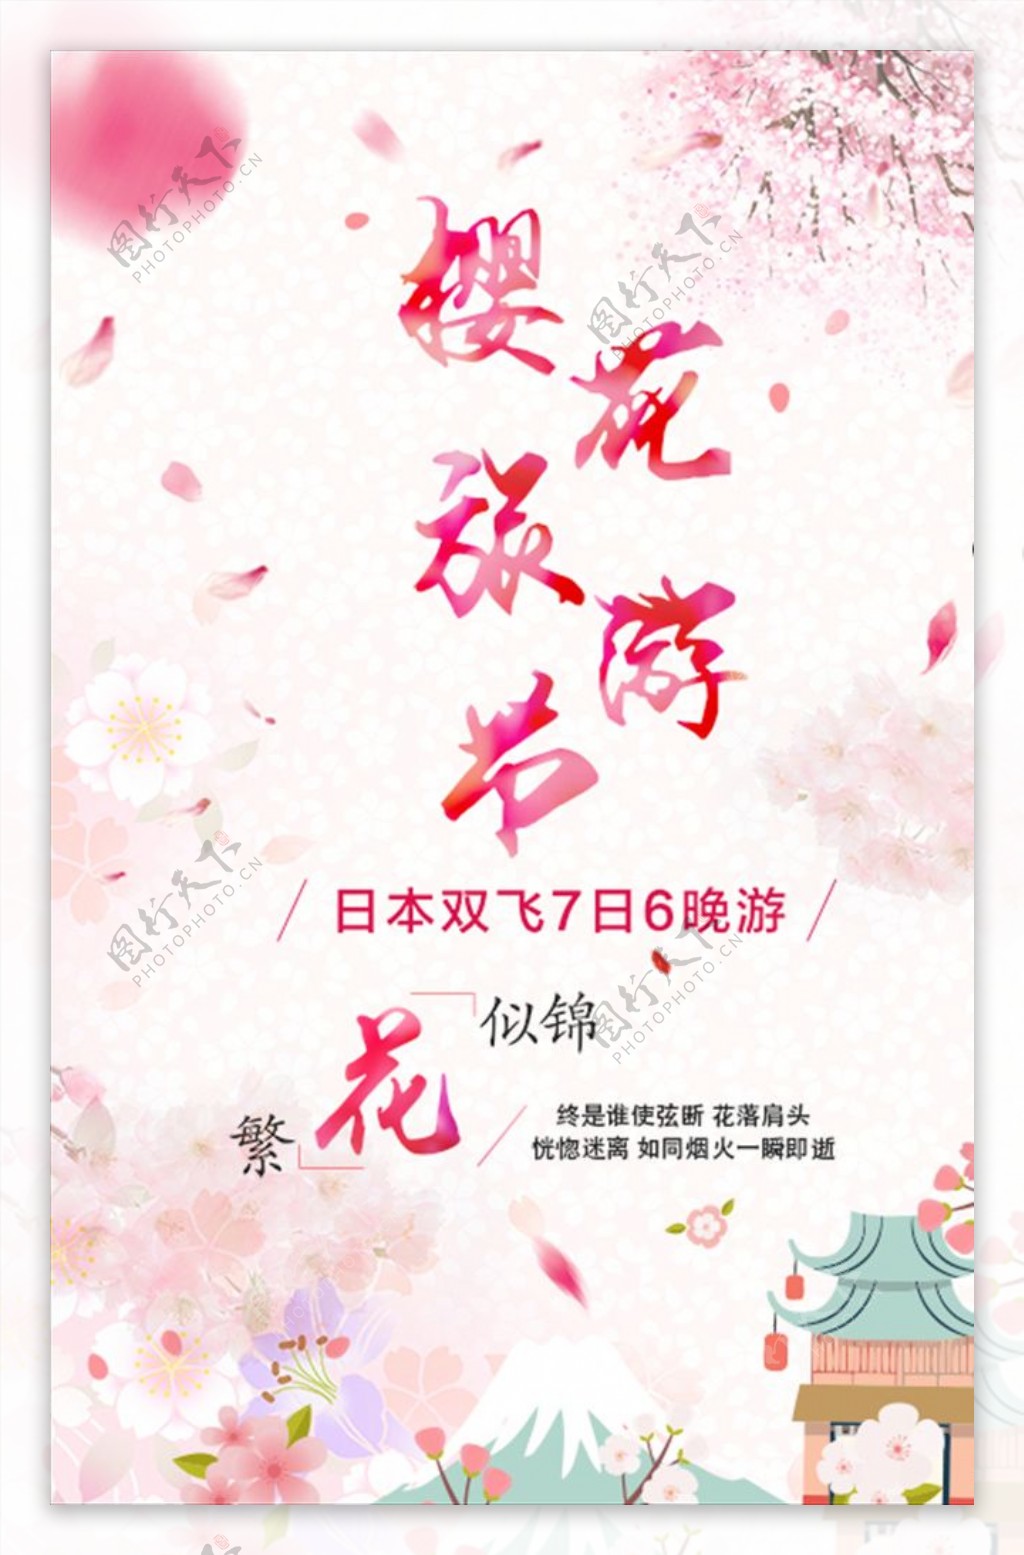 樱花旅游节促销海报